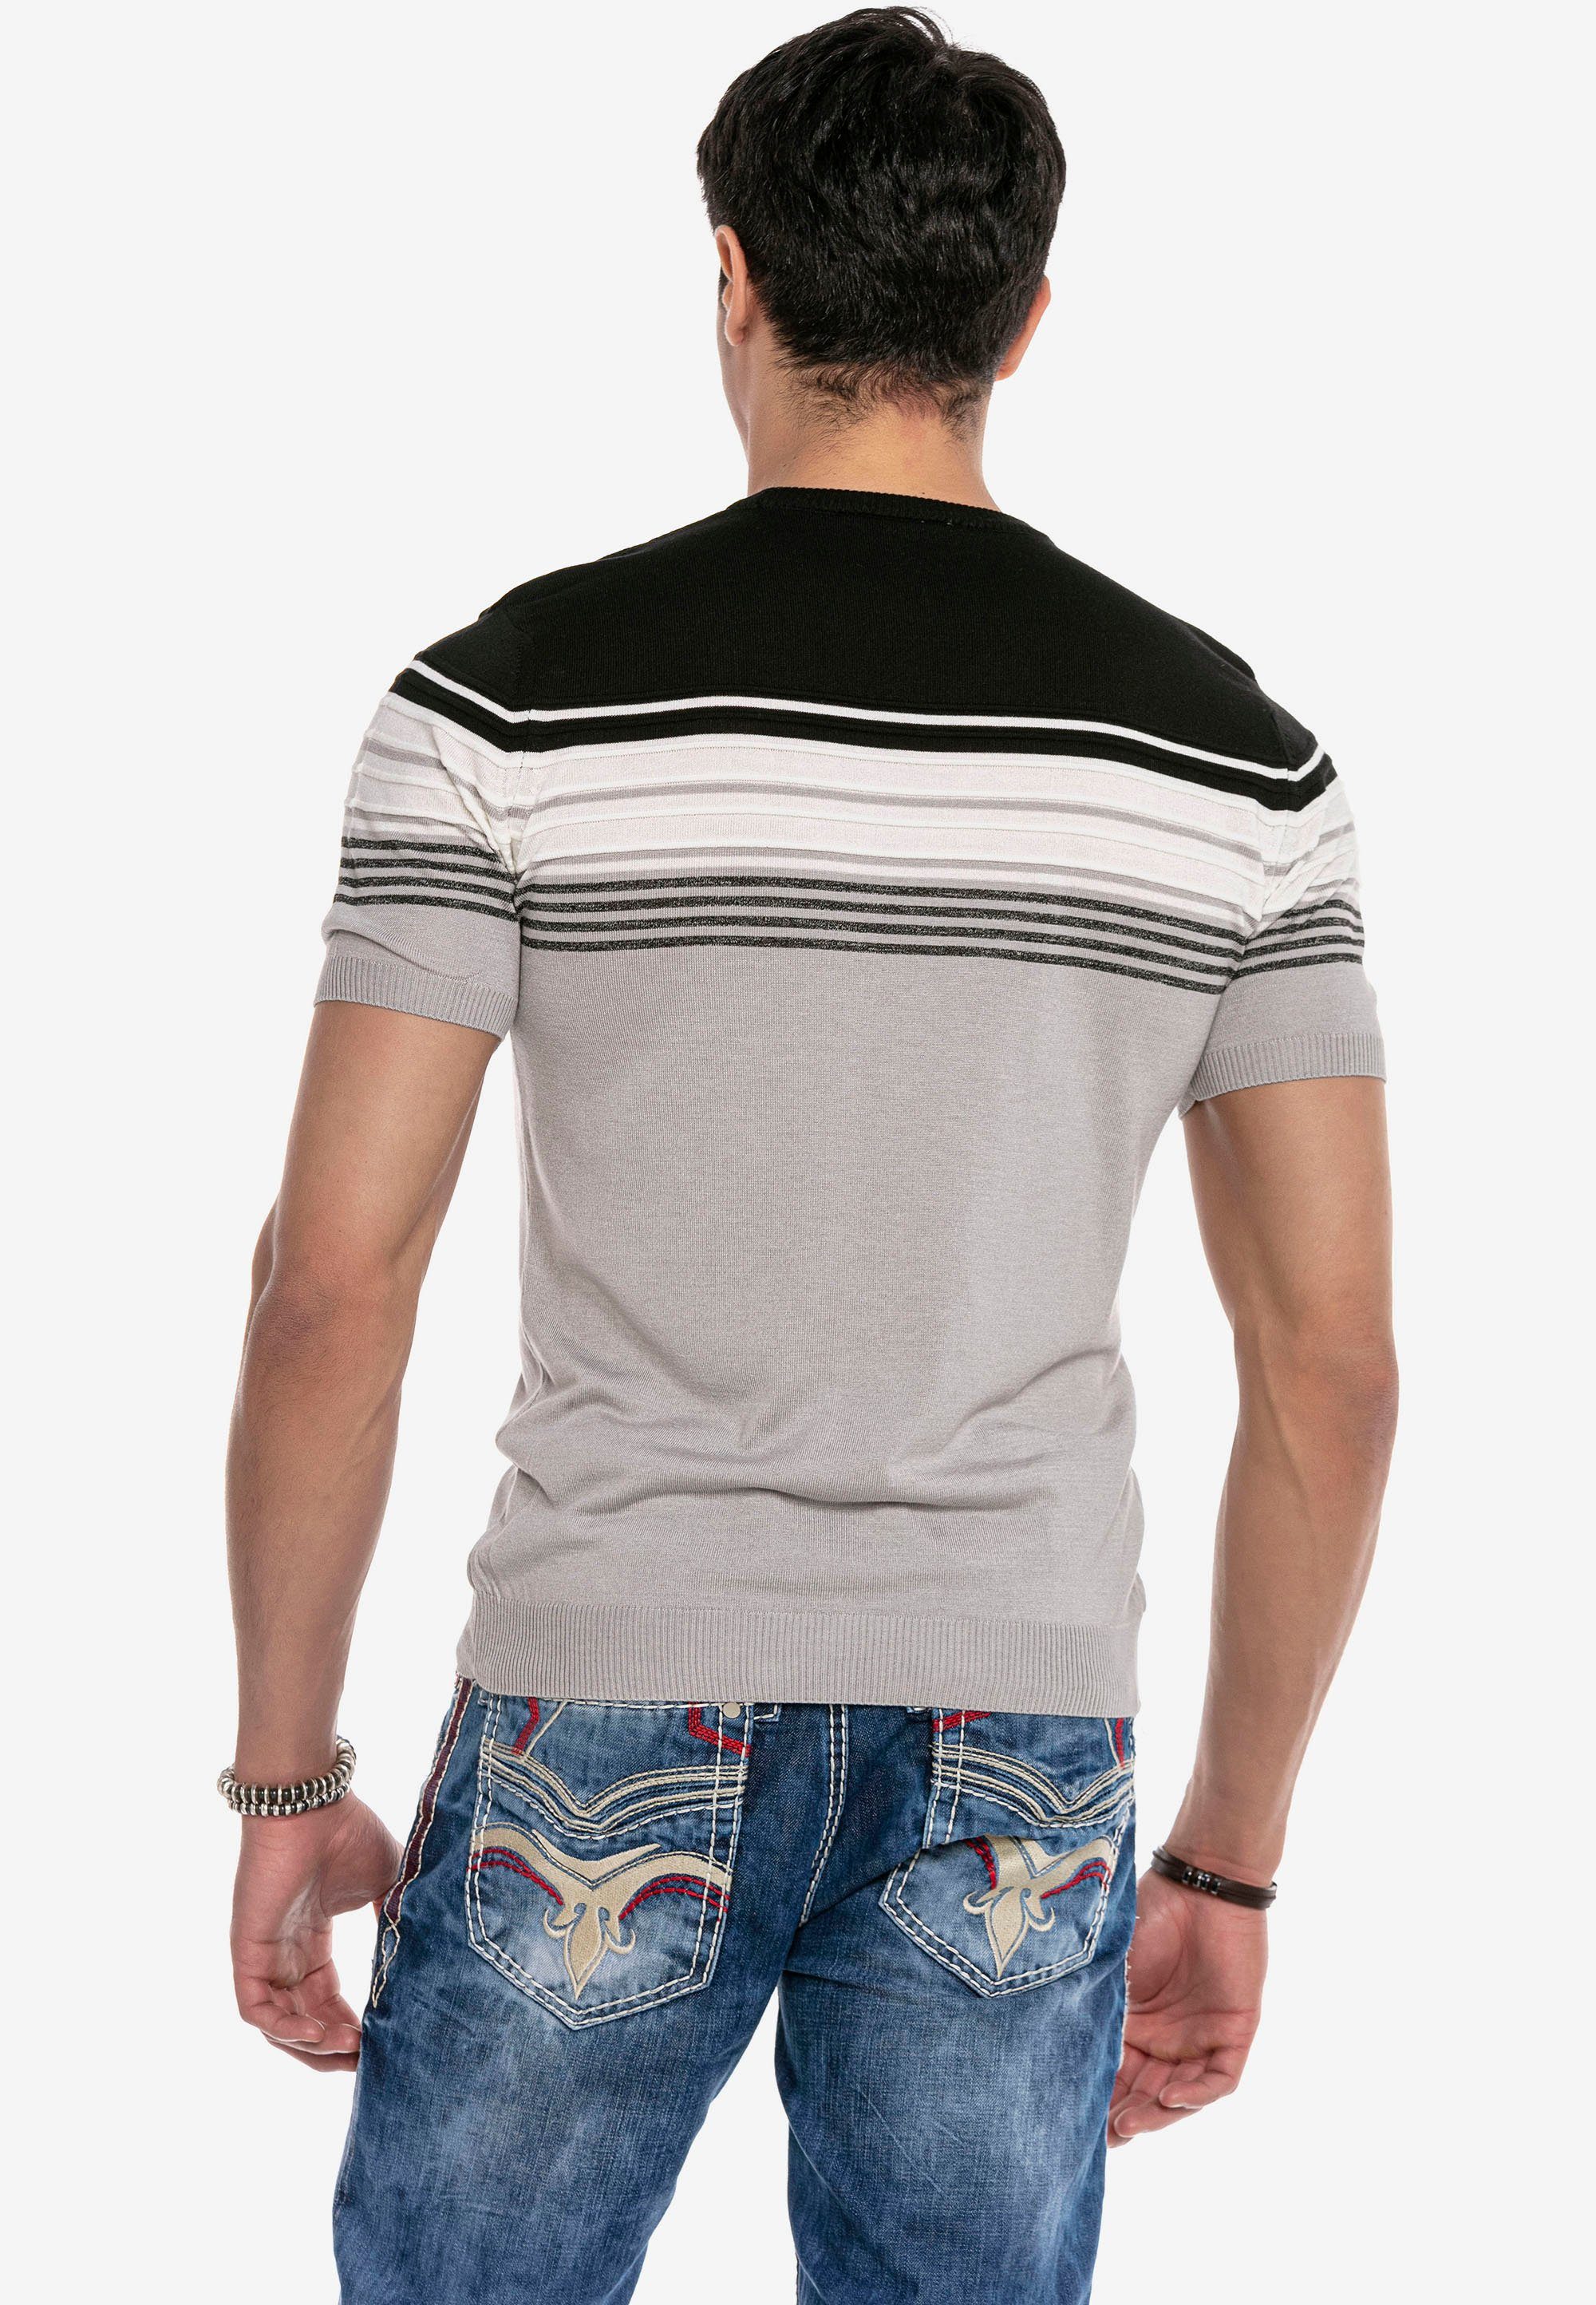 Baxx grau & mit modischem T-Shirt Streifenmuster Cipo